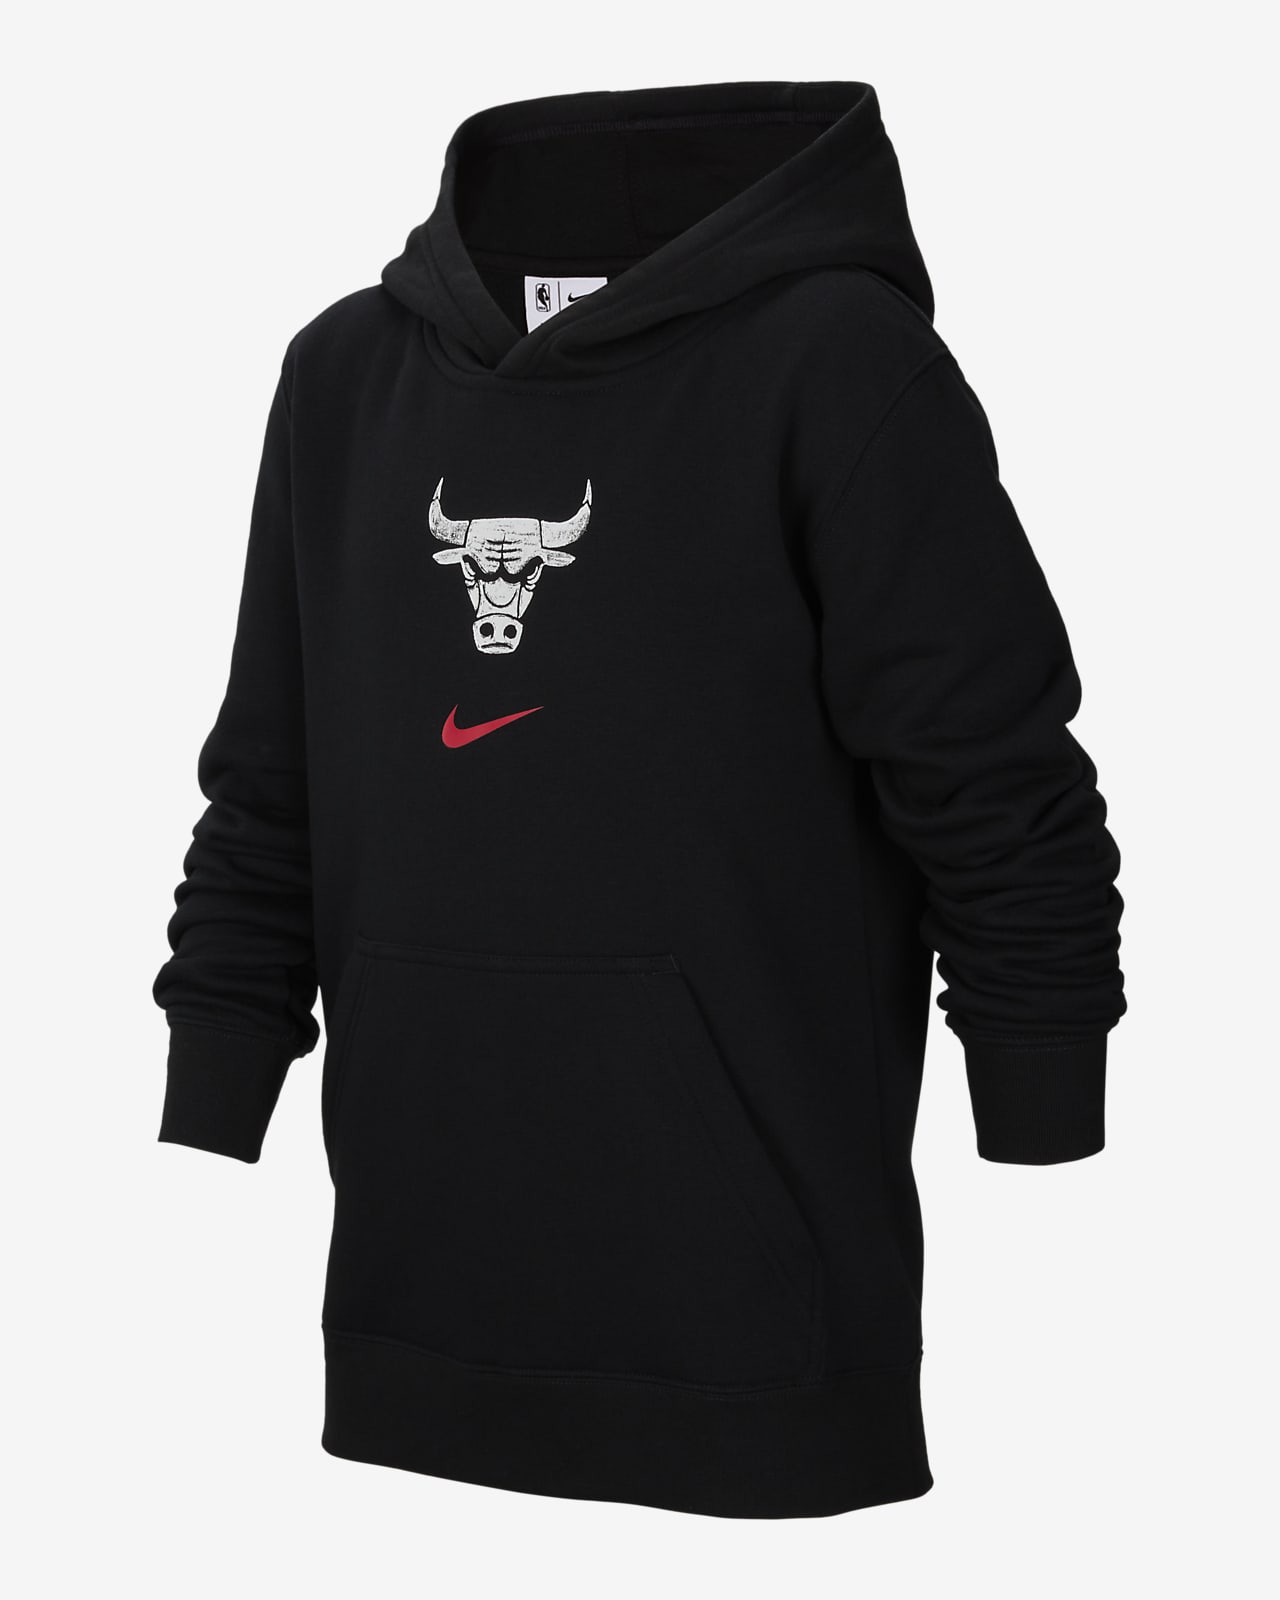 Chicago Bulls Club City Edition Nike NBA Hoodie für ältere Kinder (Jungen)